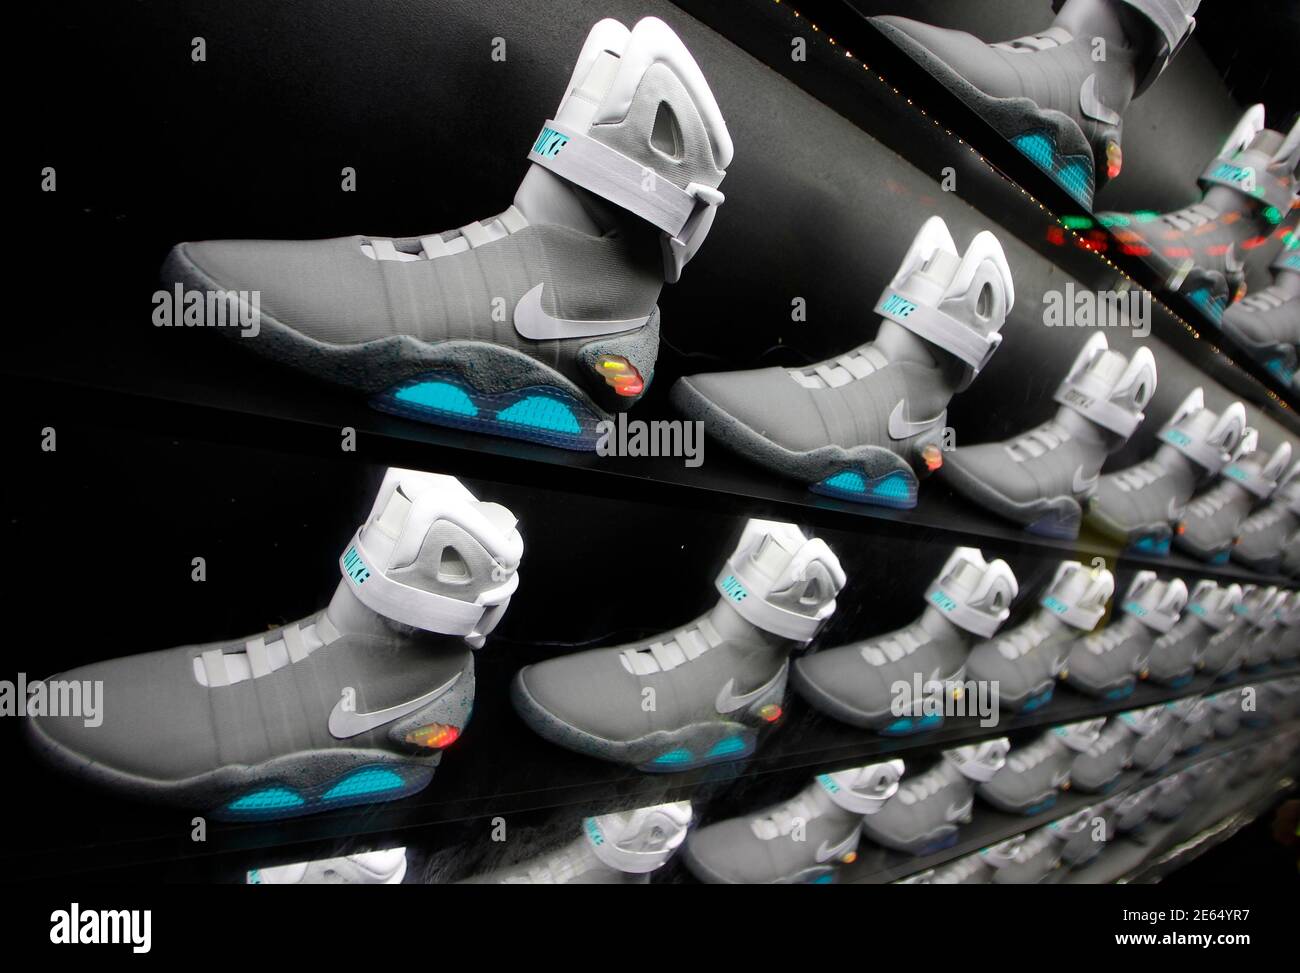 2011 las zapatillas NIKE MAG, basadas en LAS NIKE MAG originales usadas en 2015 por el personaje 'Back to the Future' McFly, interpretado Michael J. Fox, se exhiben durante su